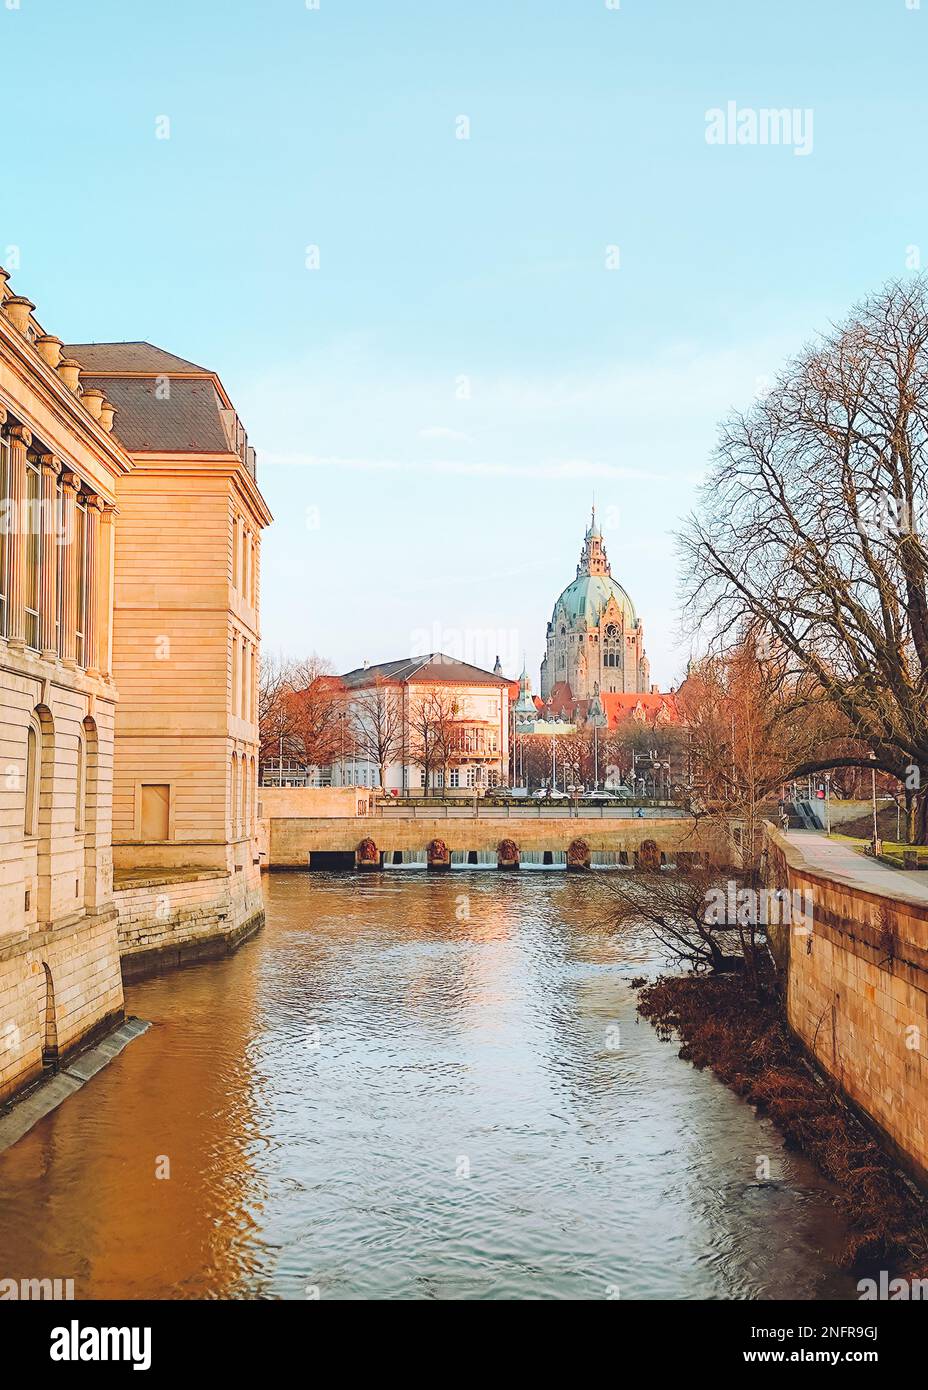 Vue sur la nouvelle mairie historique de Hanovre en Allemagne avec la rivière Leine. Magnifique paysage urbain Banque D'Images